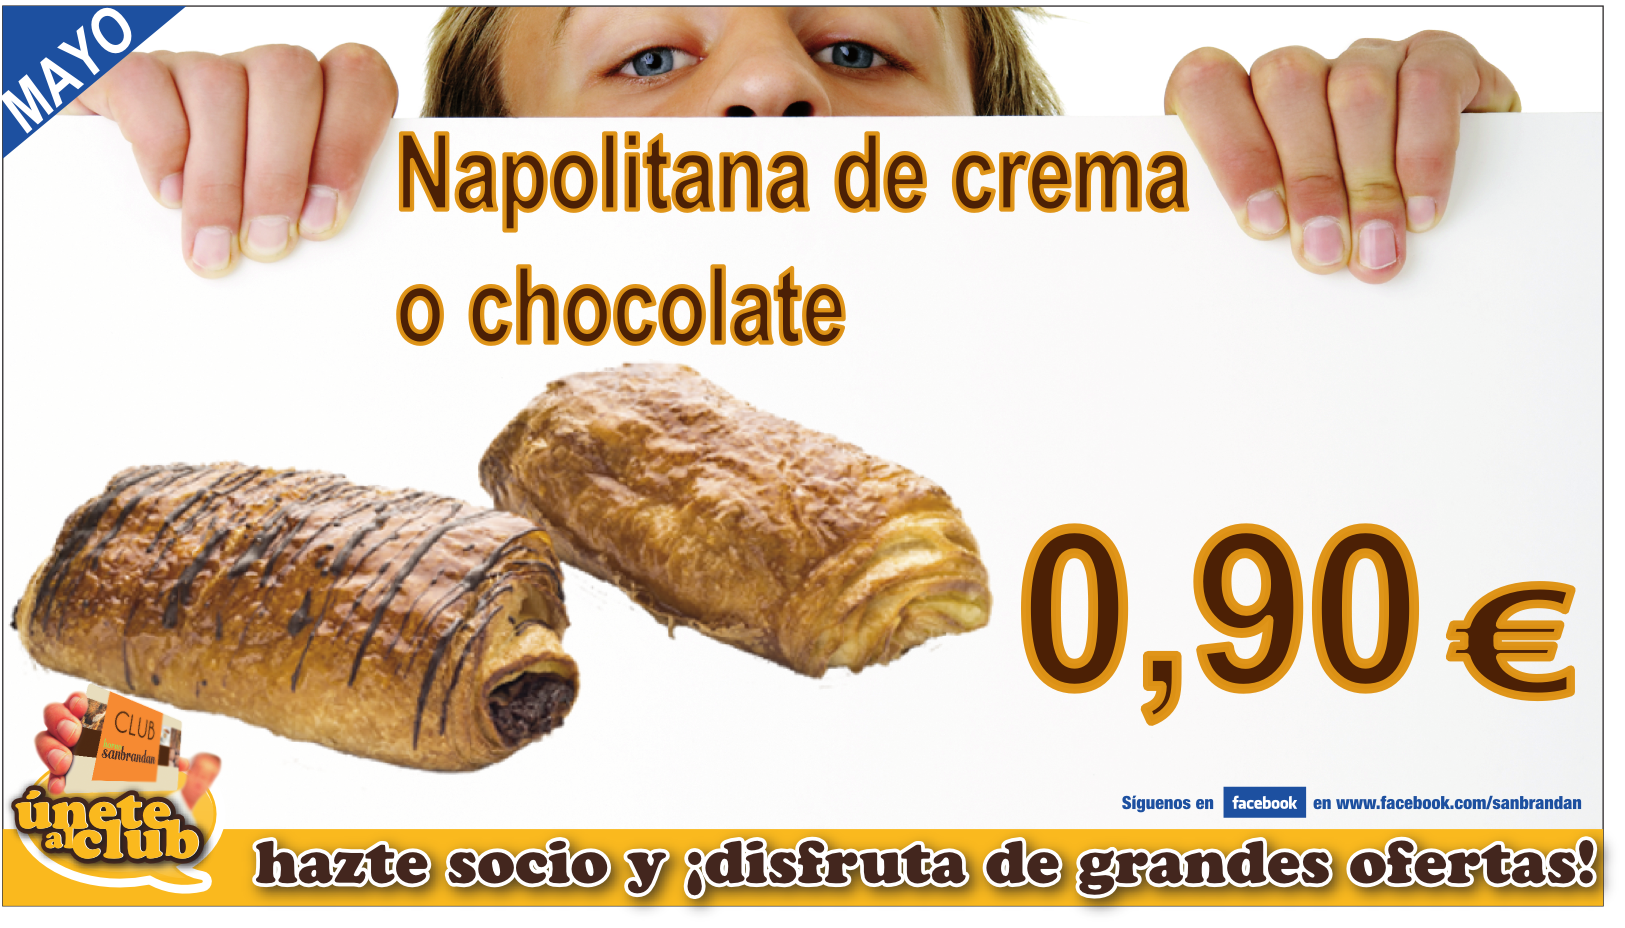 Napolitana de crema o chocolate 0,90 €